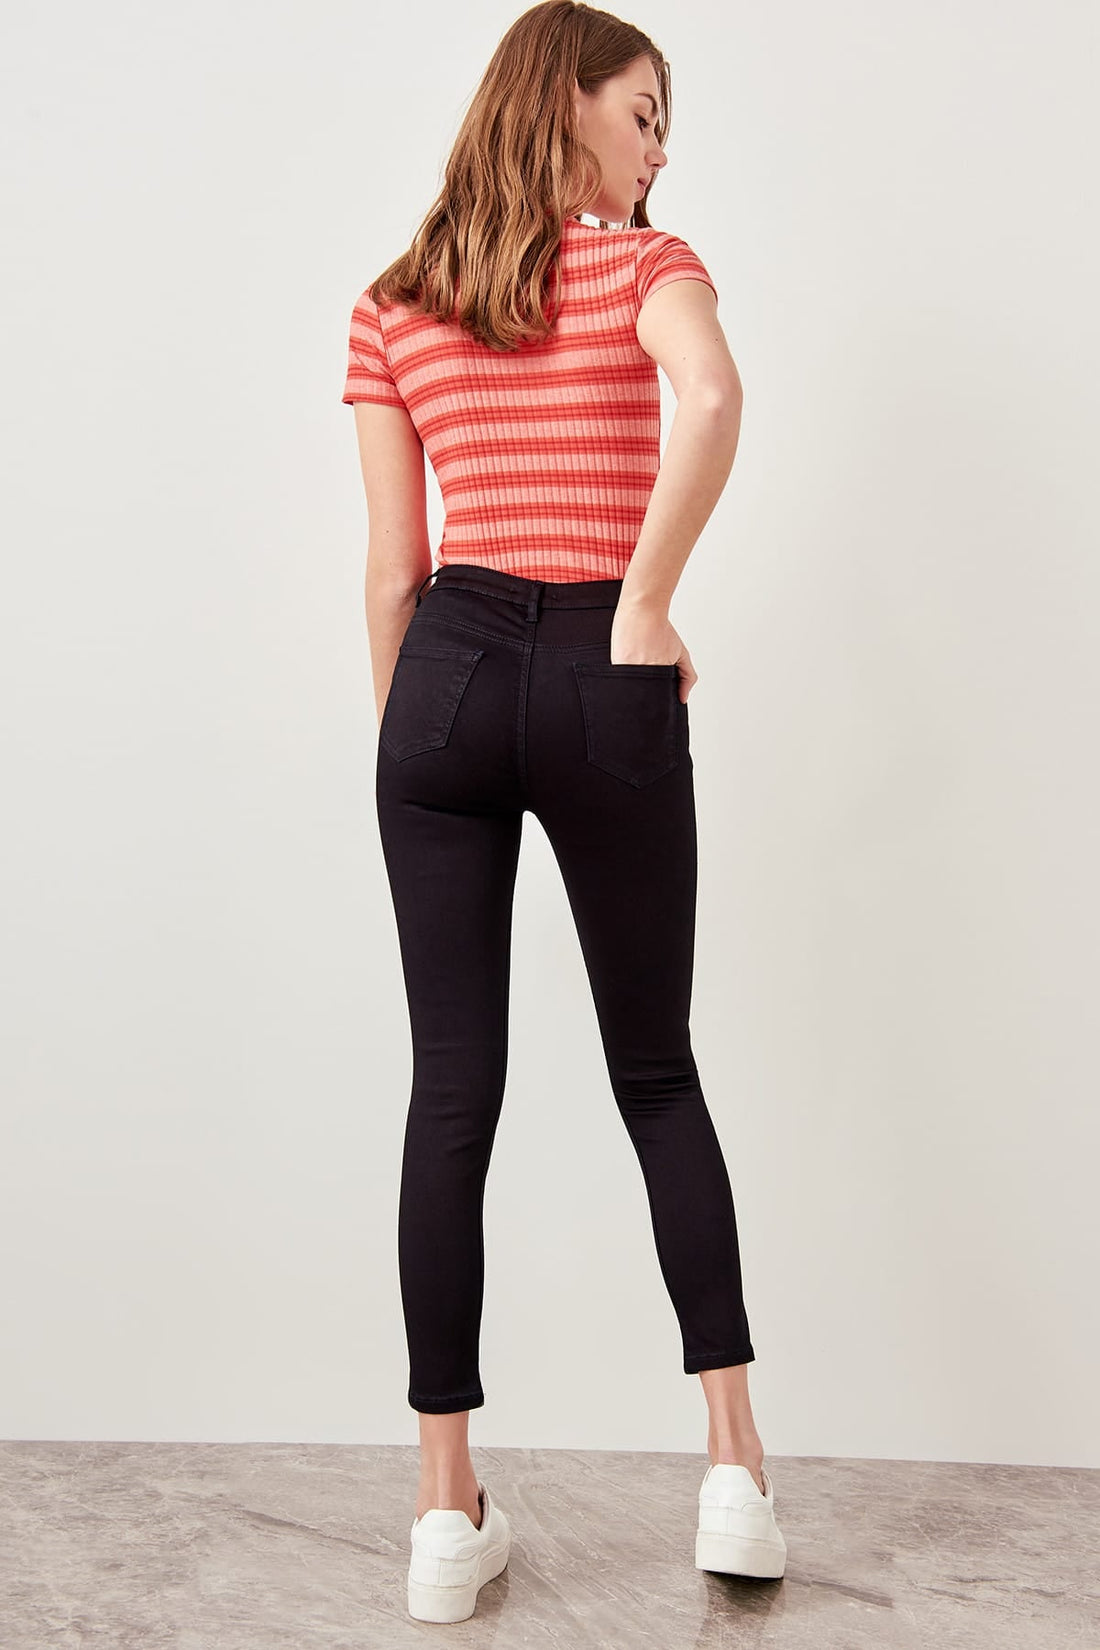 Women's Cotton High-Waist Jeans